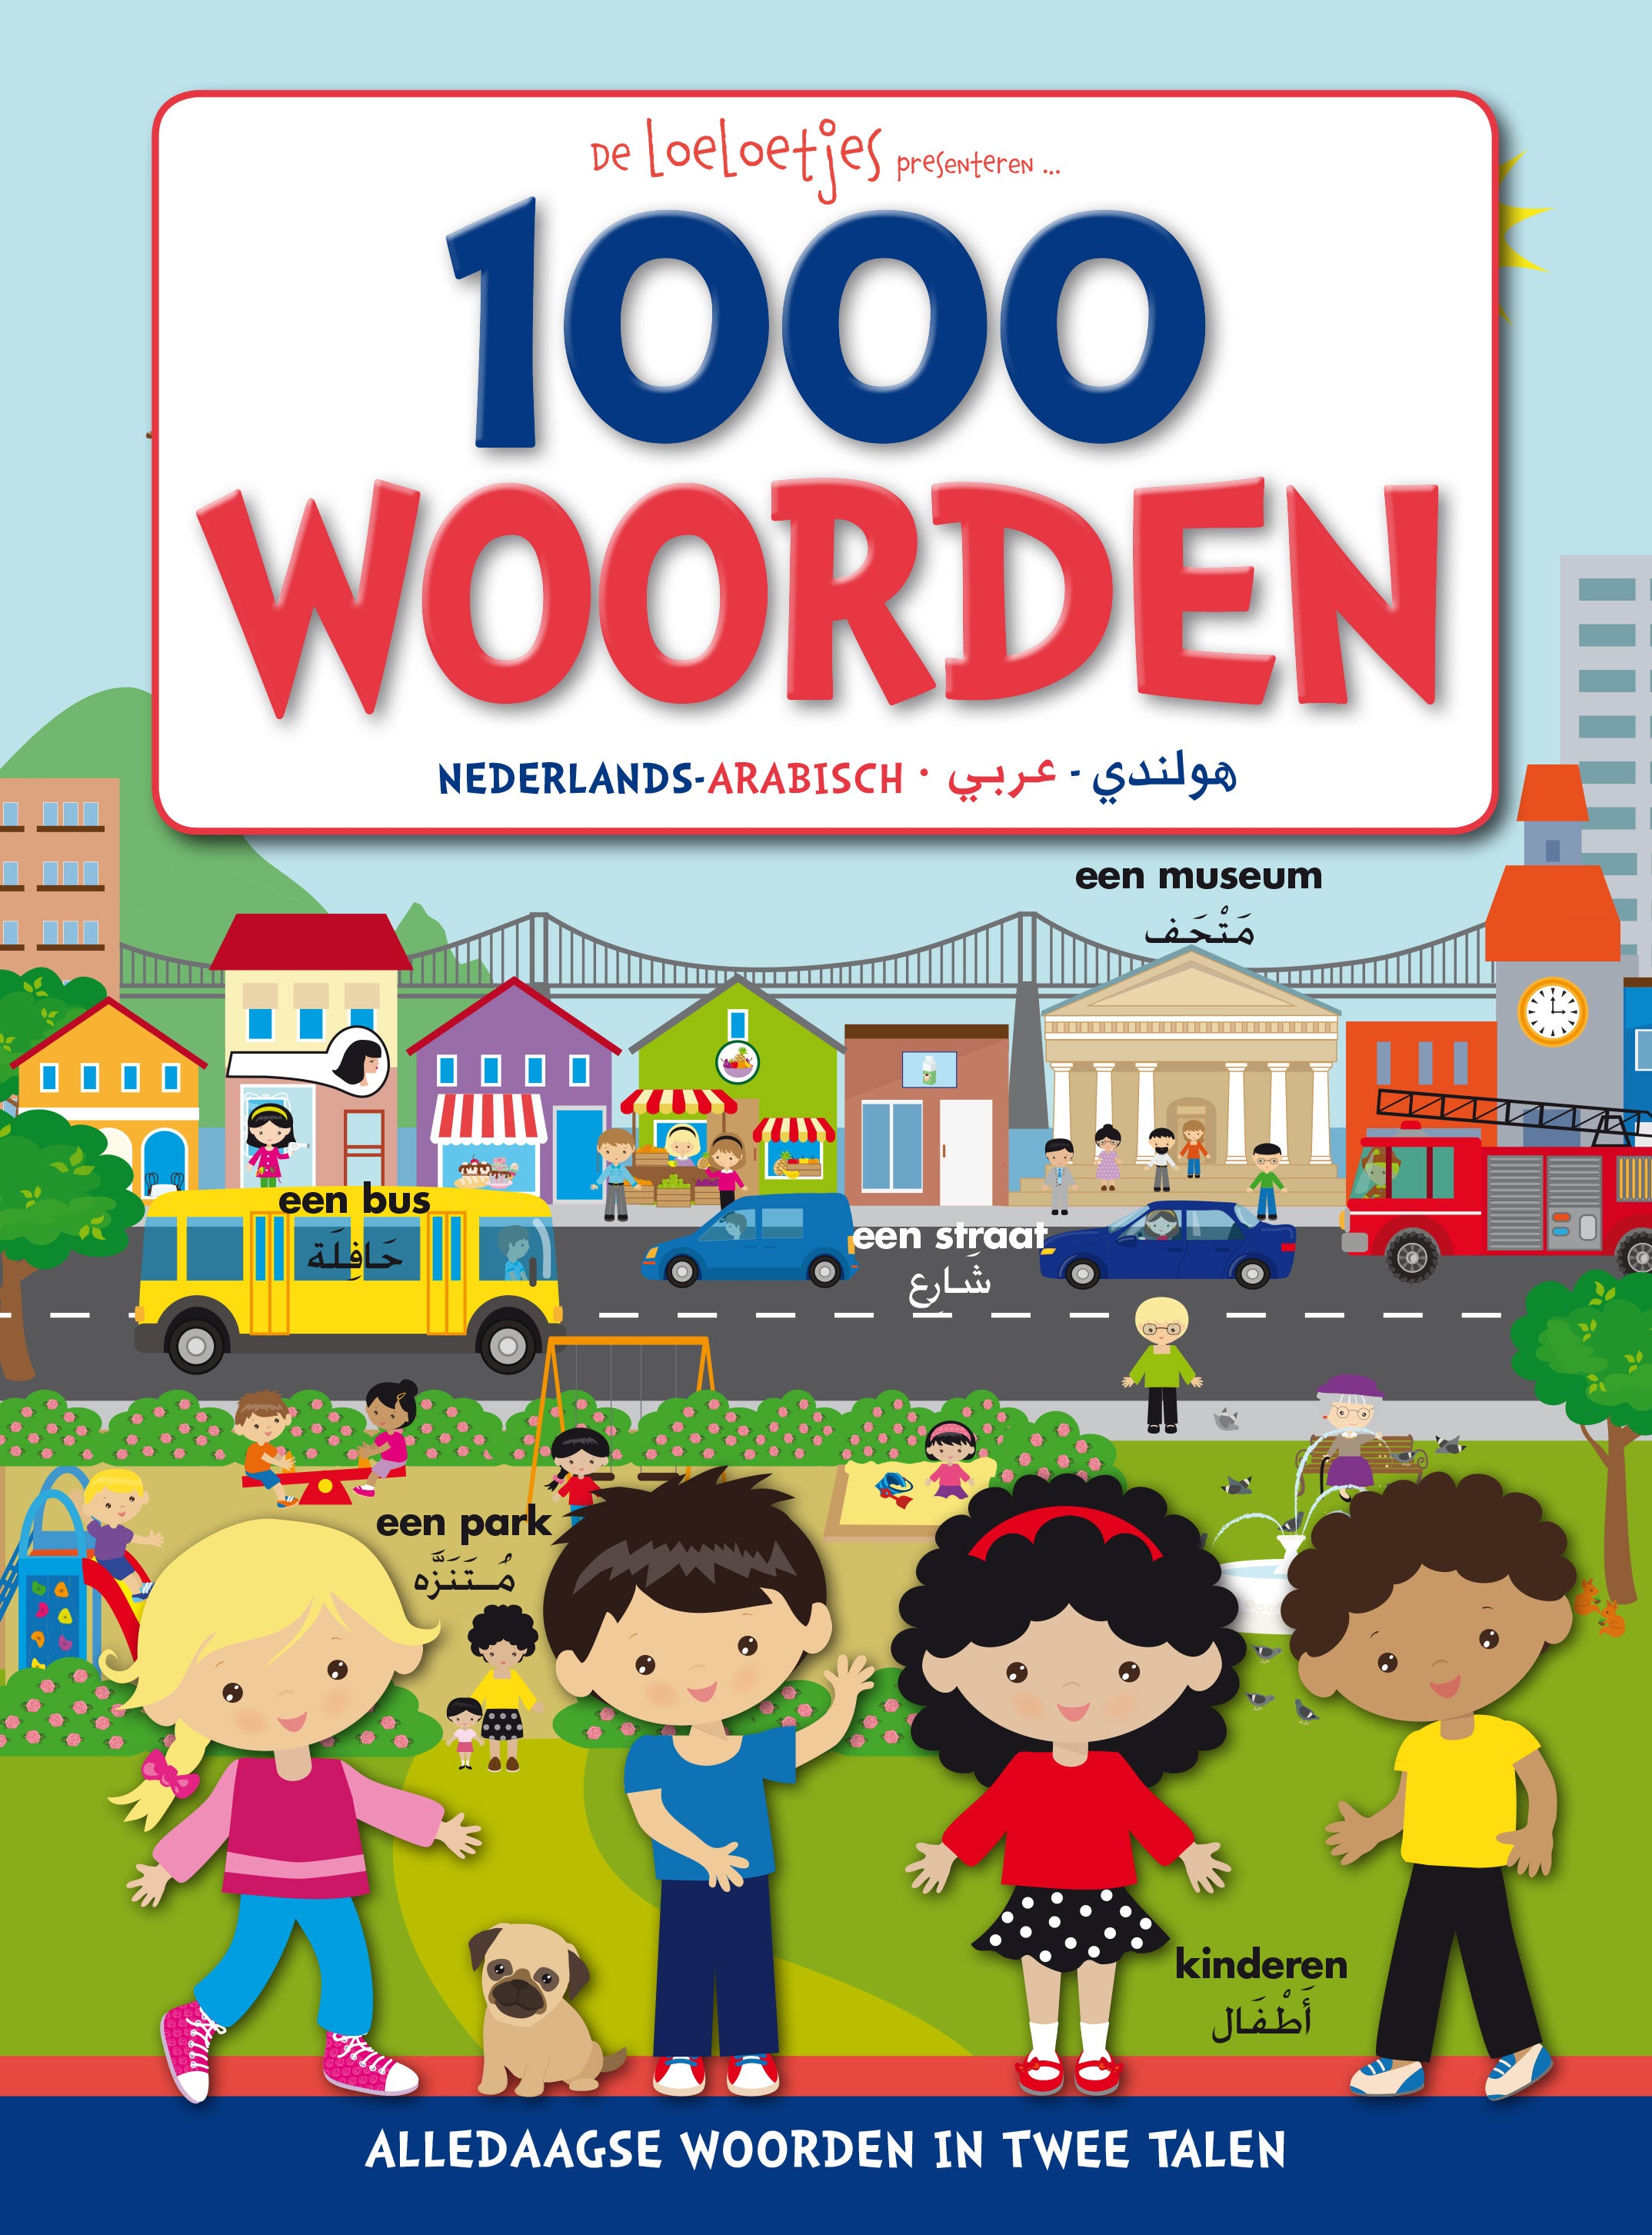 de-loeloetjes-presenteren-1000-woorden-nederlands-arabisch